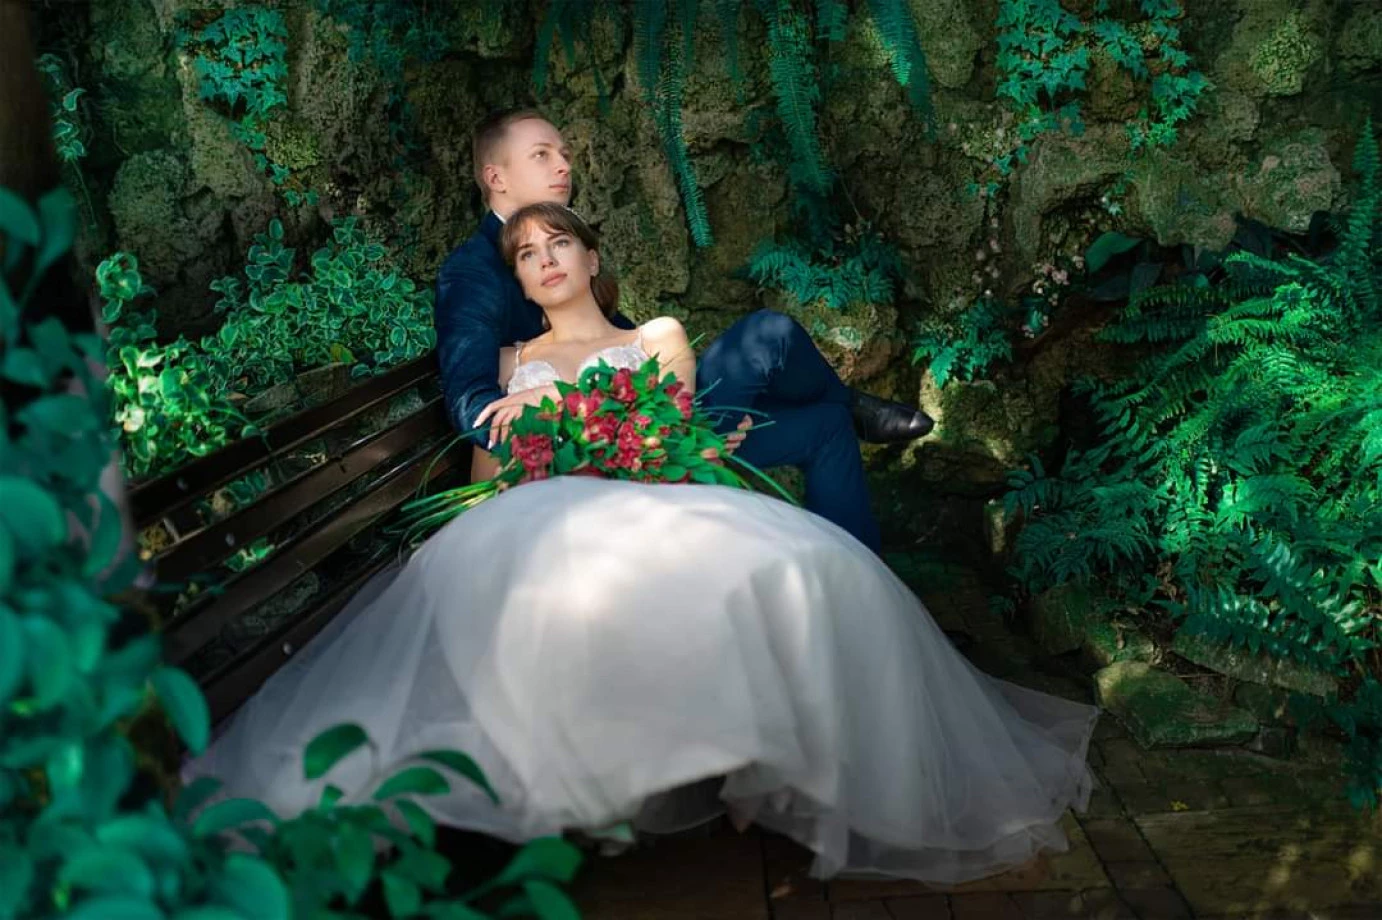 zdjęcia walbrzych fotograf tomasz-tuminski-fantomash portfolio zdjecia slubne inspiracje wesele plener slubny sesja slubna